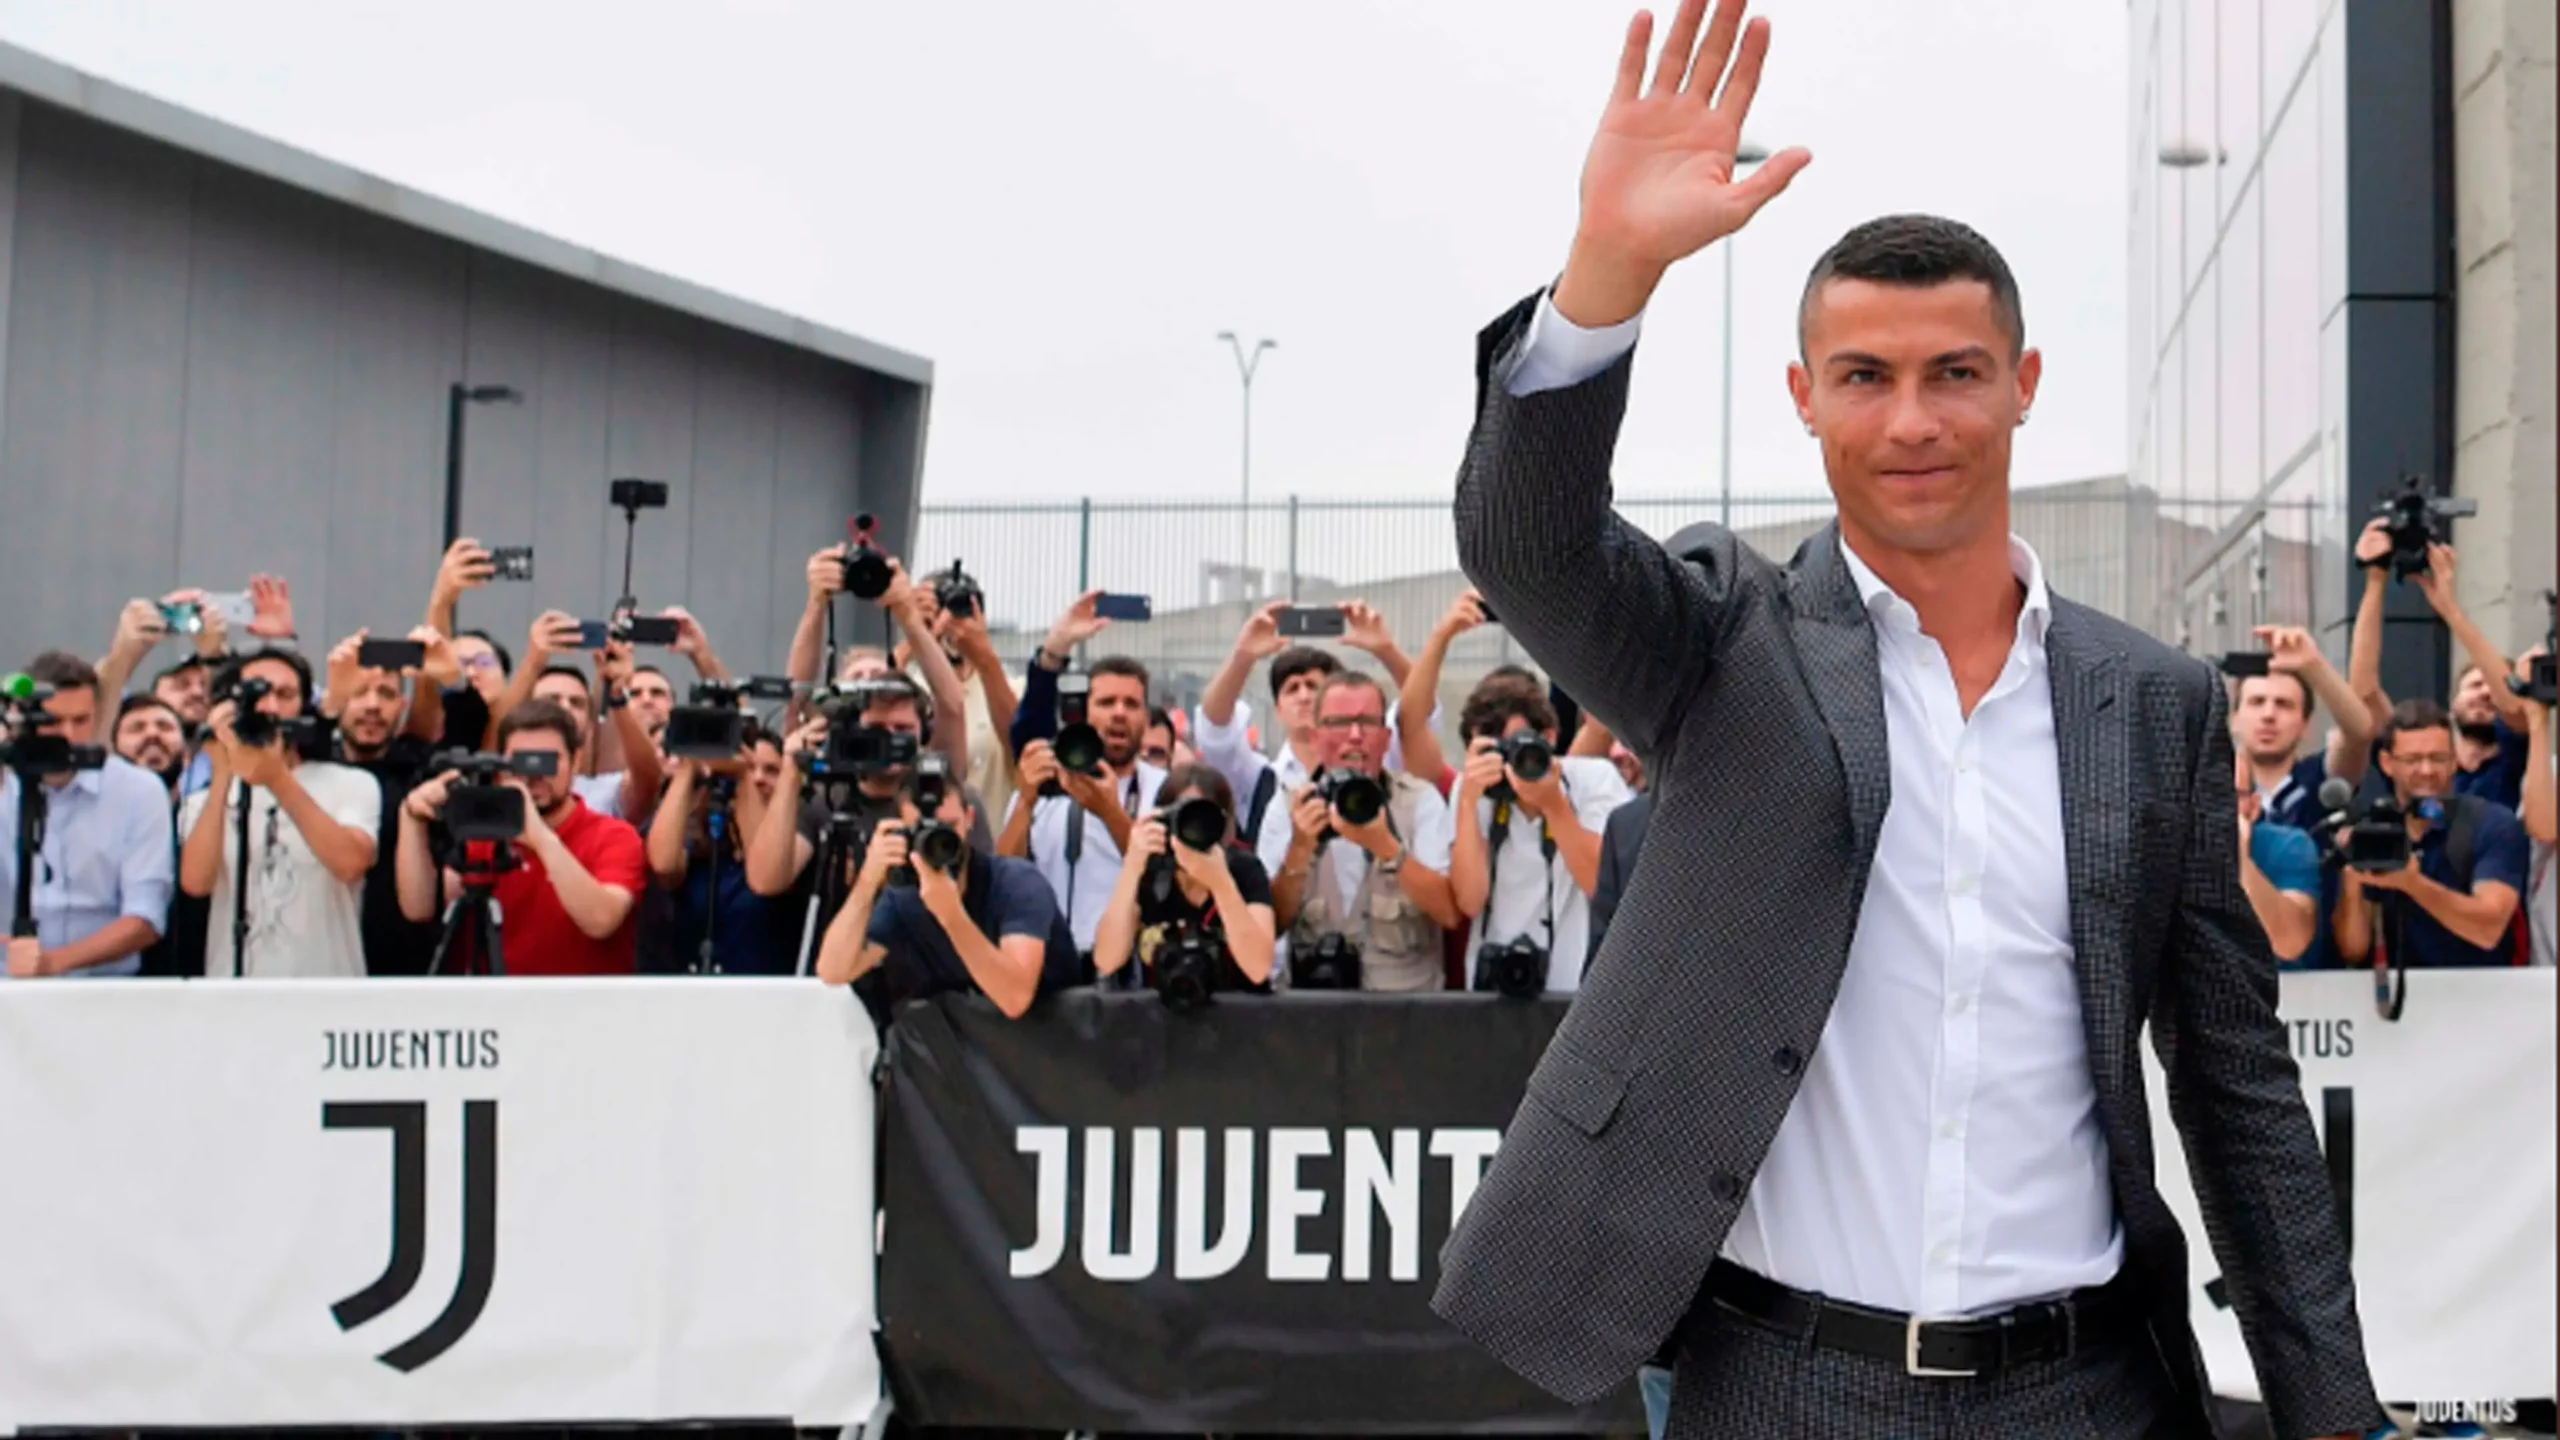 Giá chuyển nhượng Ronaldo khi chuyển đến Juventus thi đấu